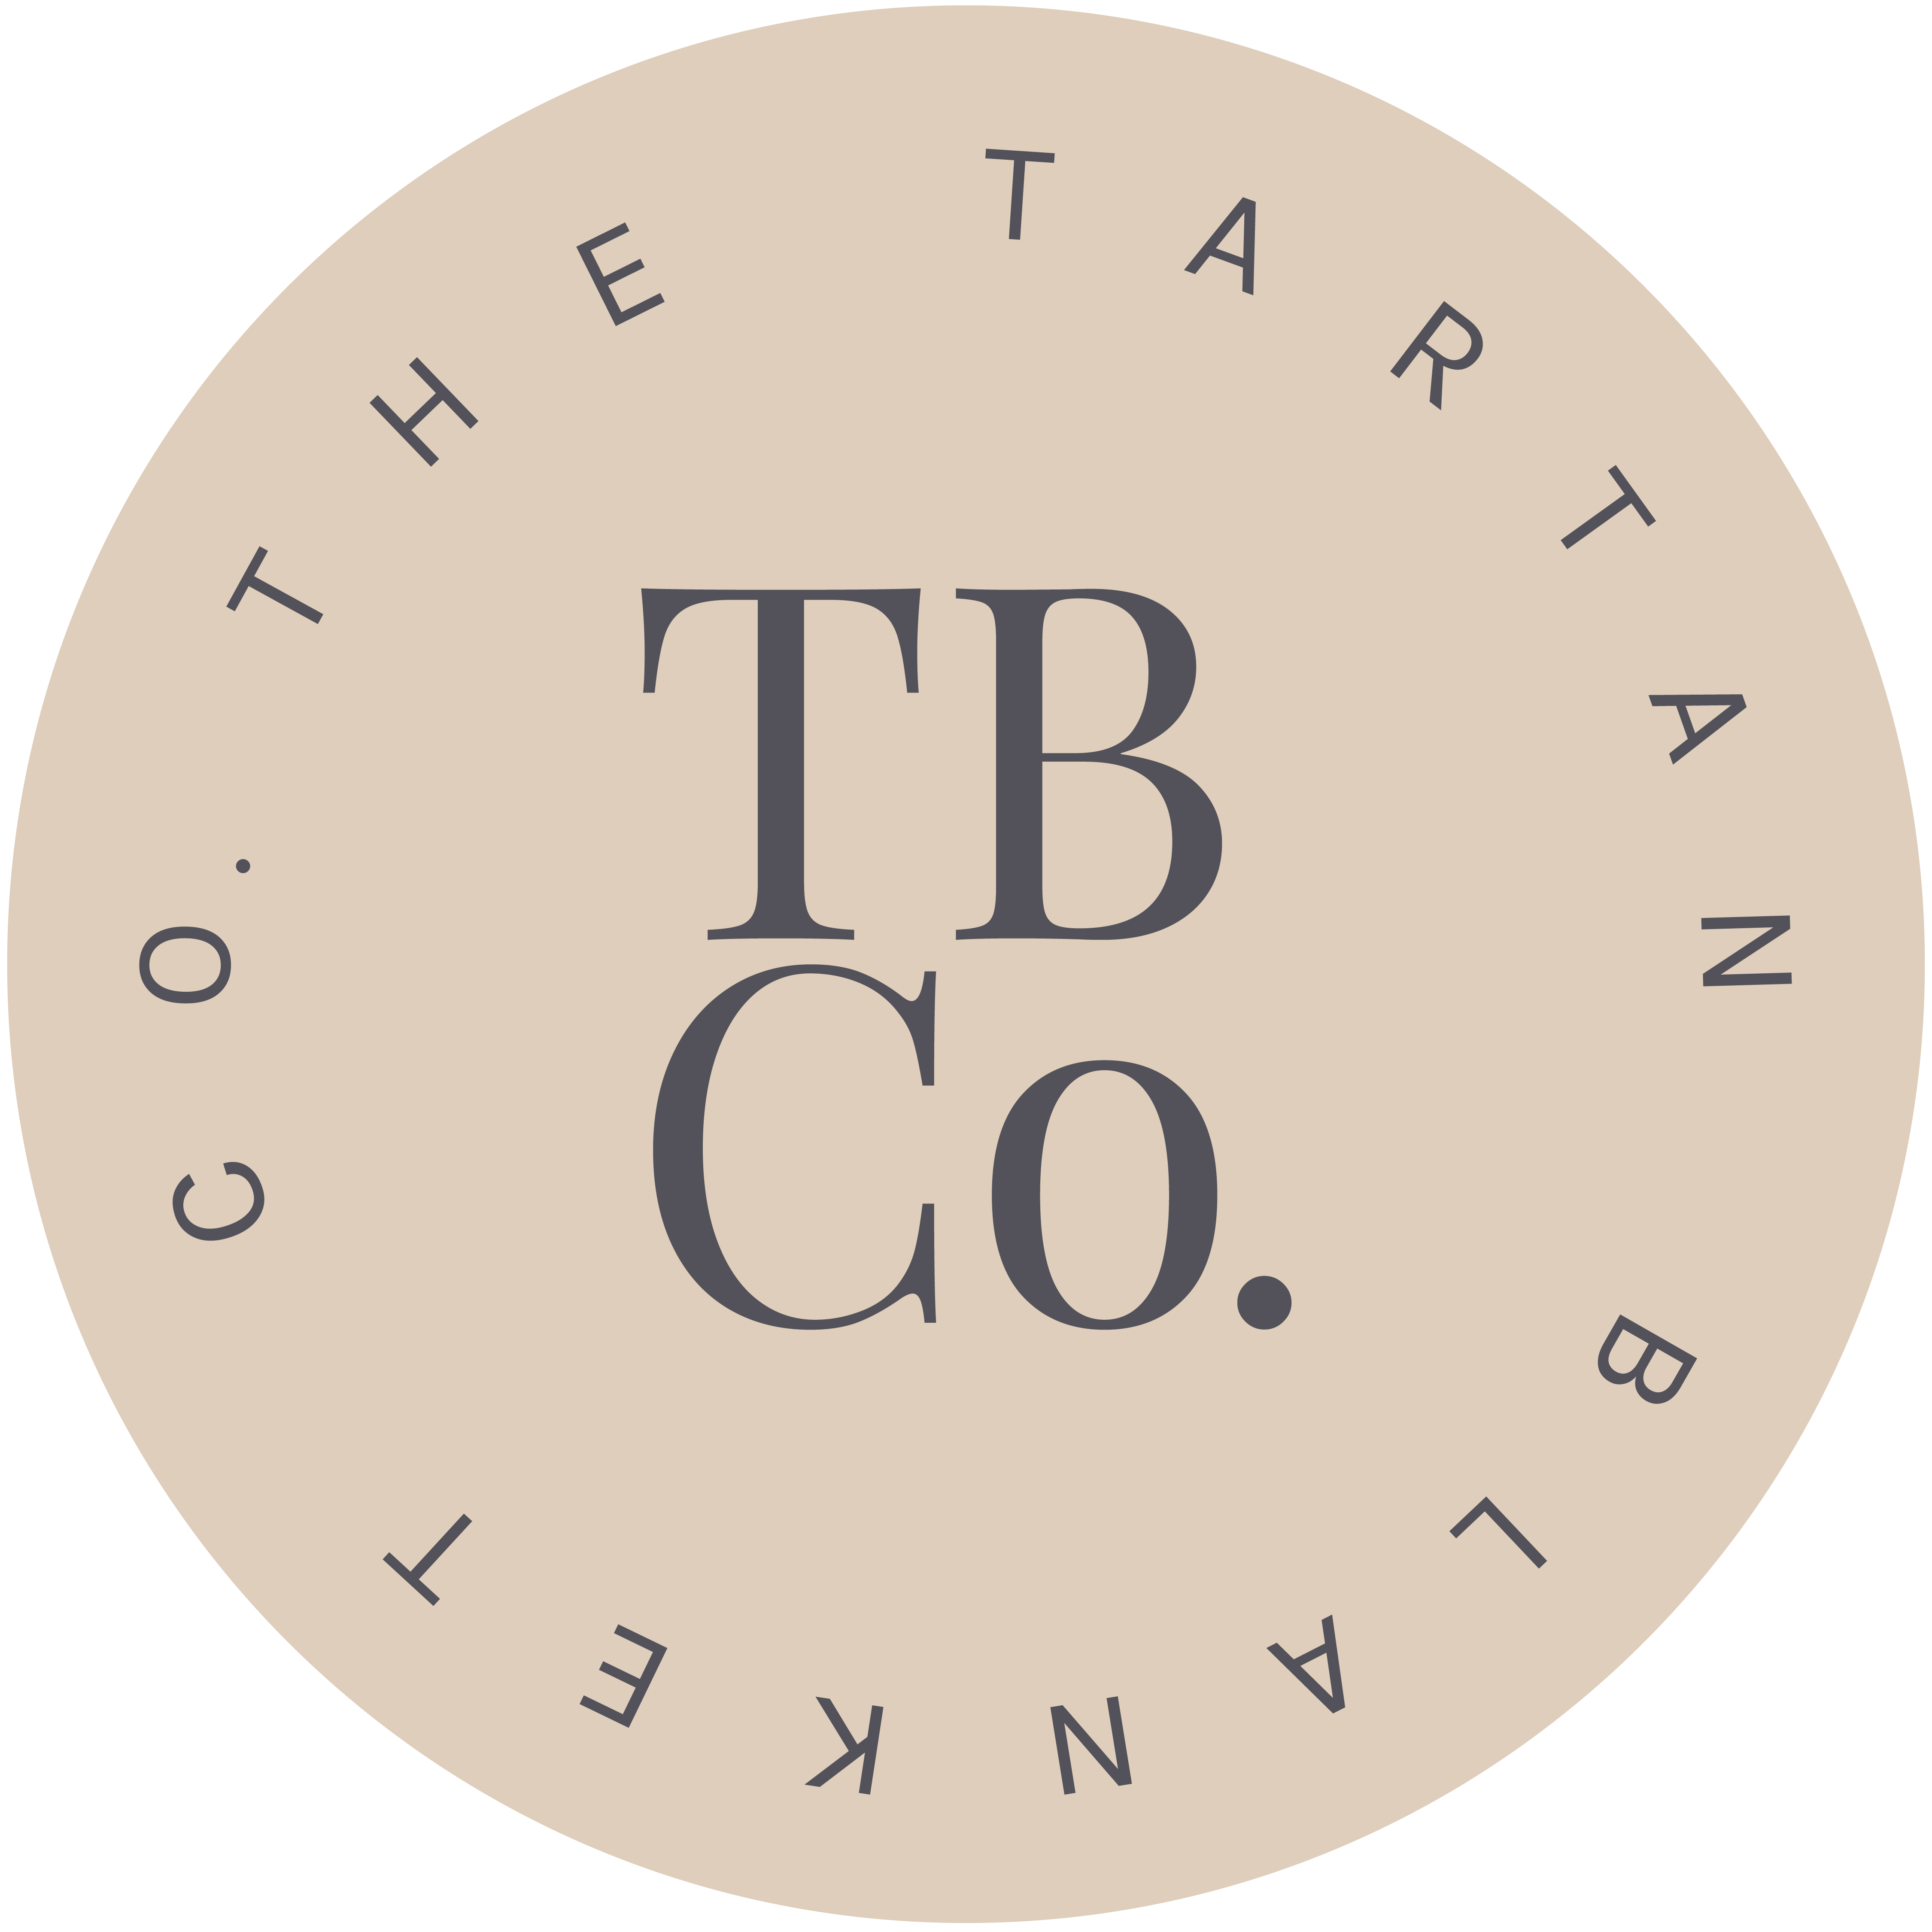 logo for TBCo